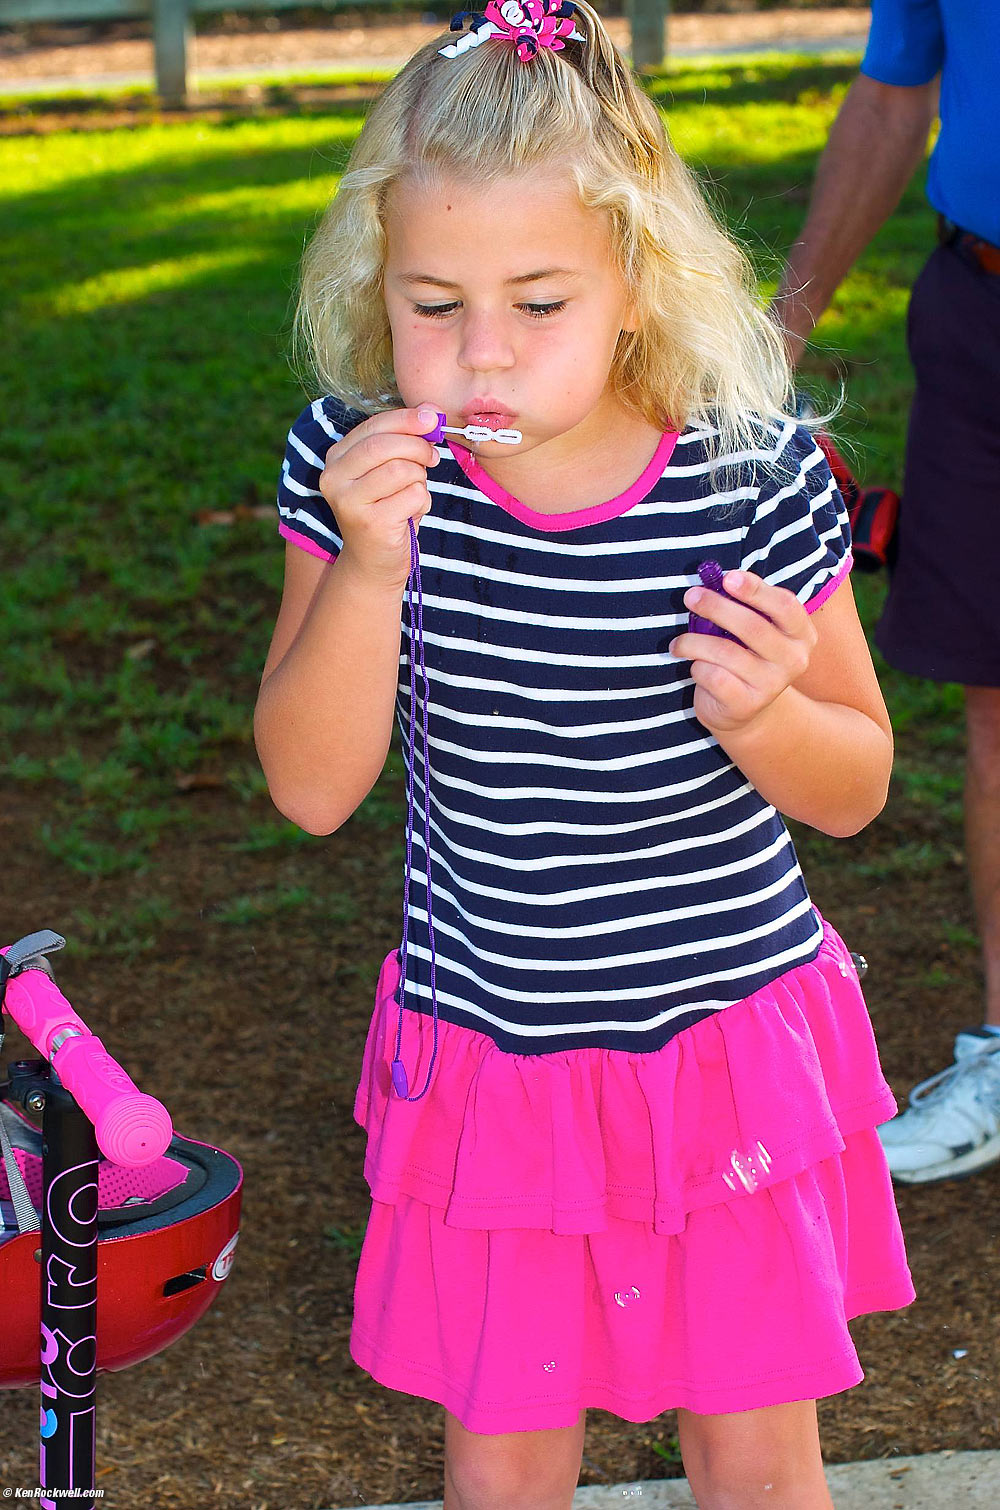 Katie blowing bubbles at Noni's park. 